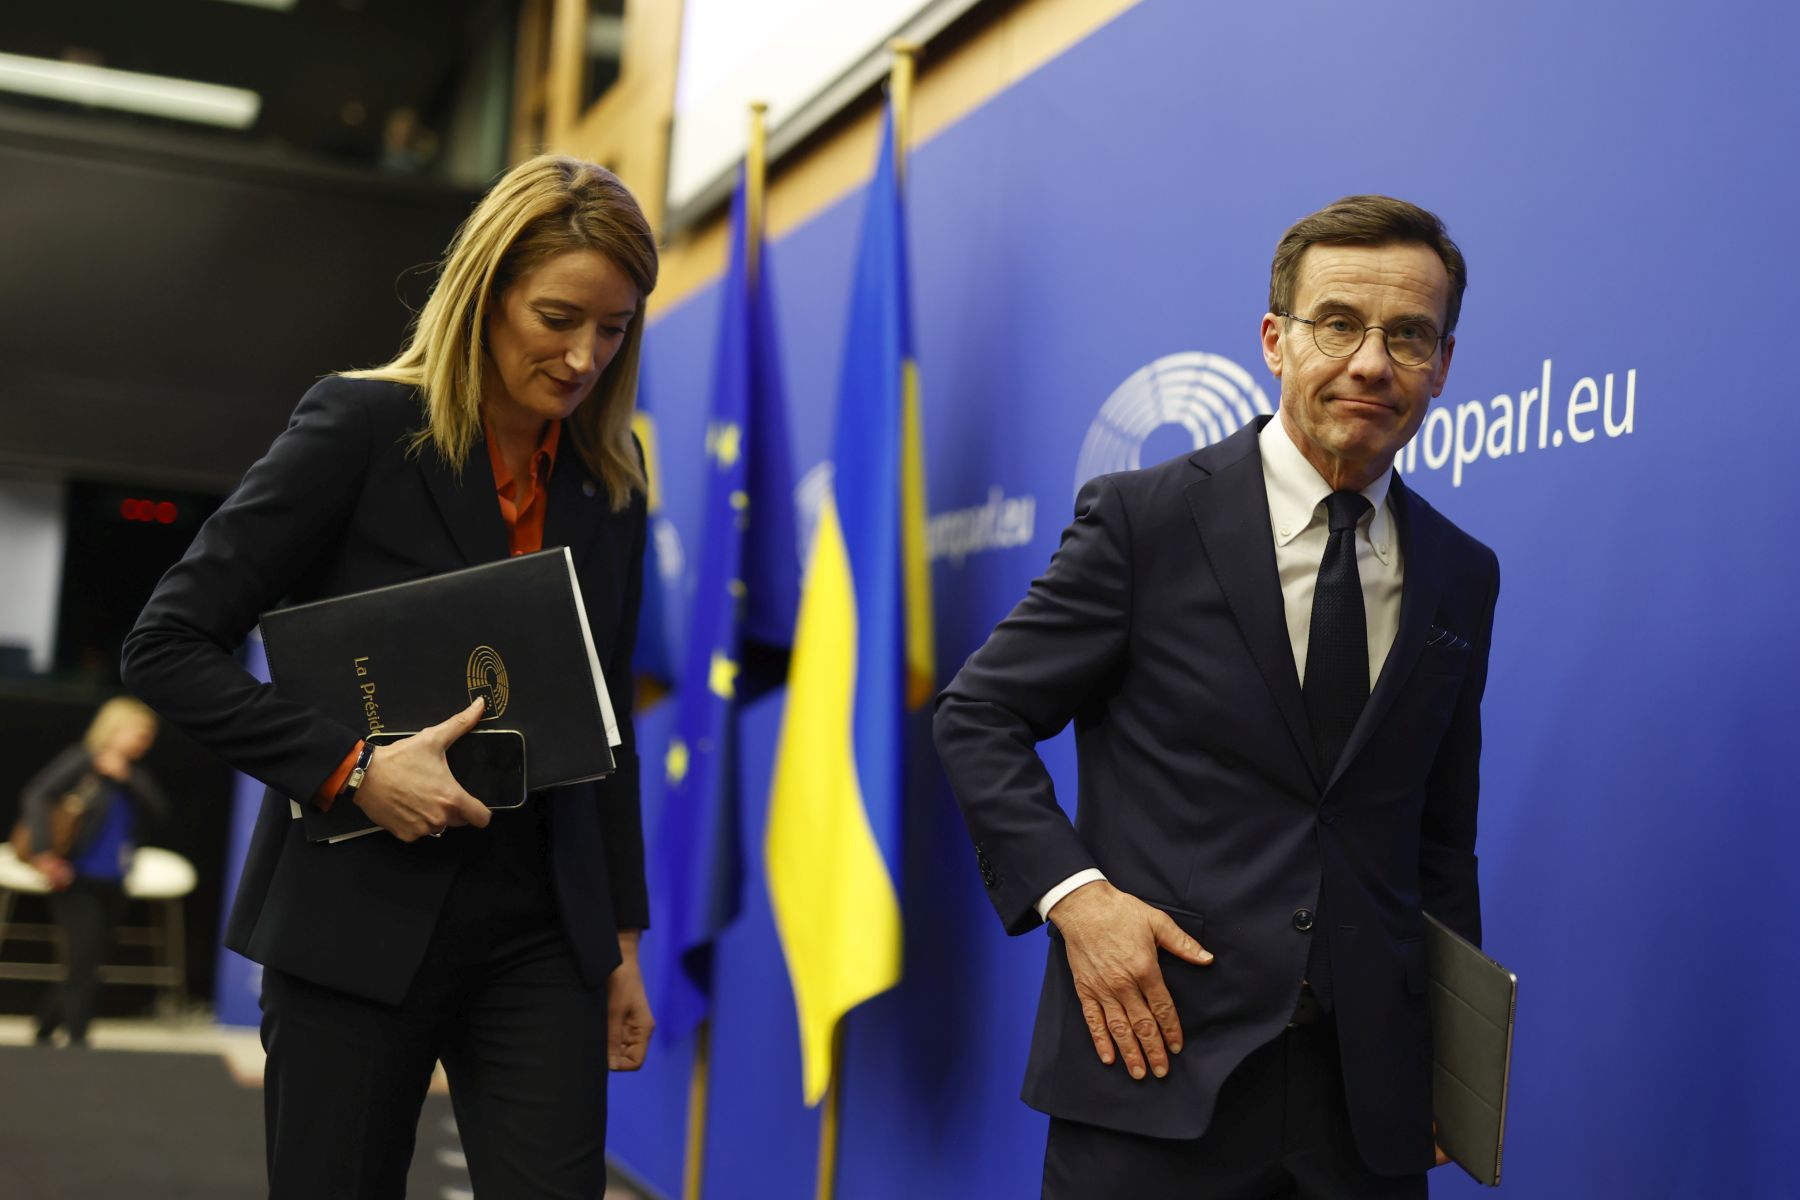 Pénteken jön Budapestre a svéd miniszterelnök